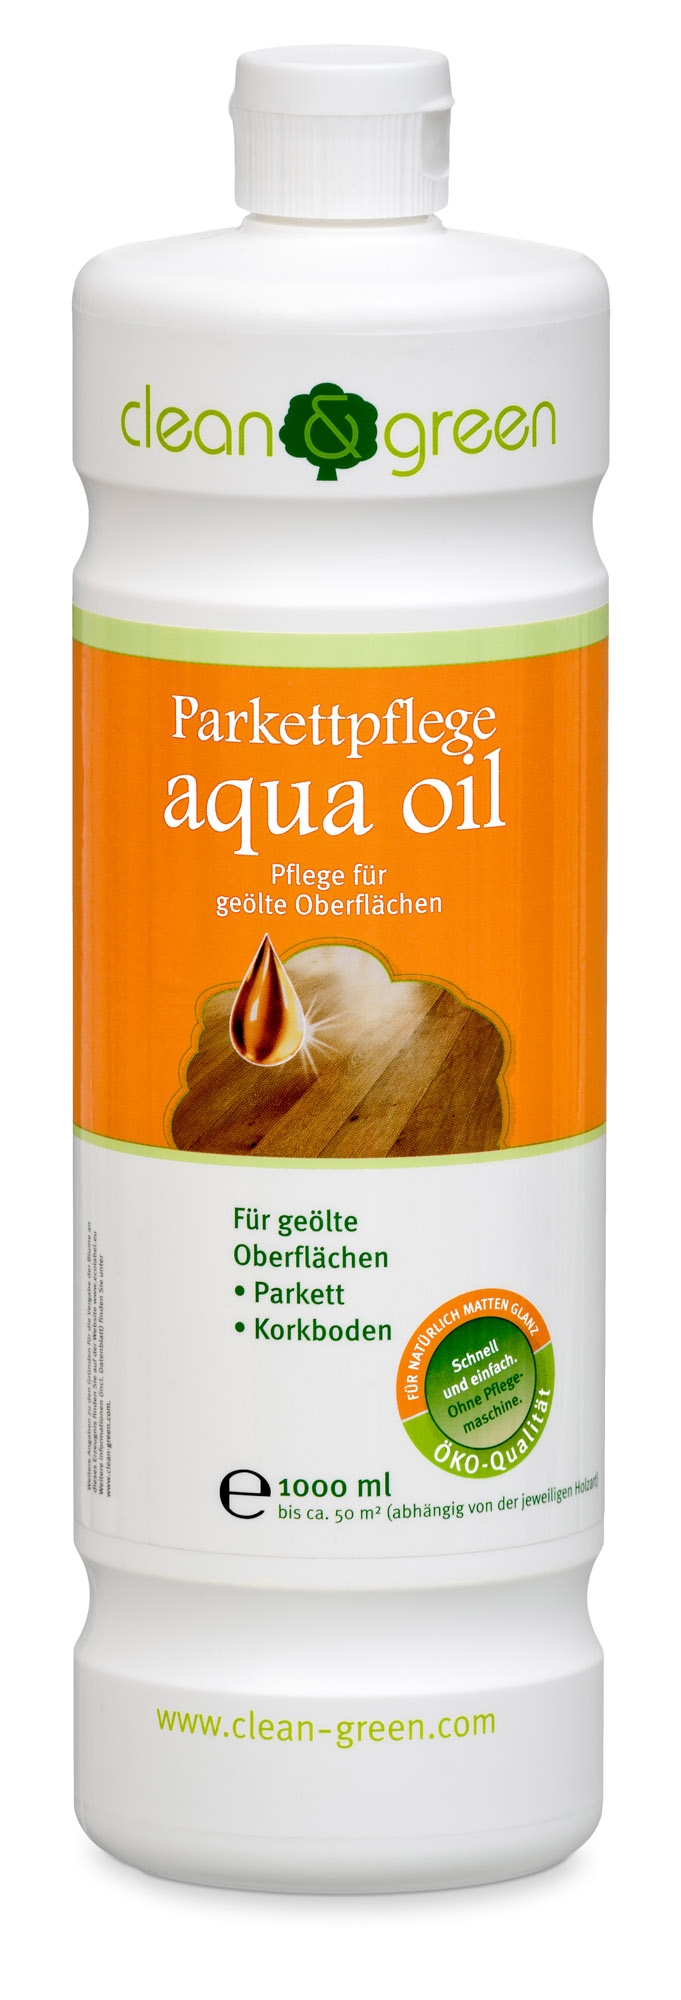 Haro clean & green Parkettpflege aqua oil